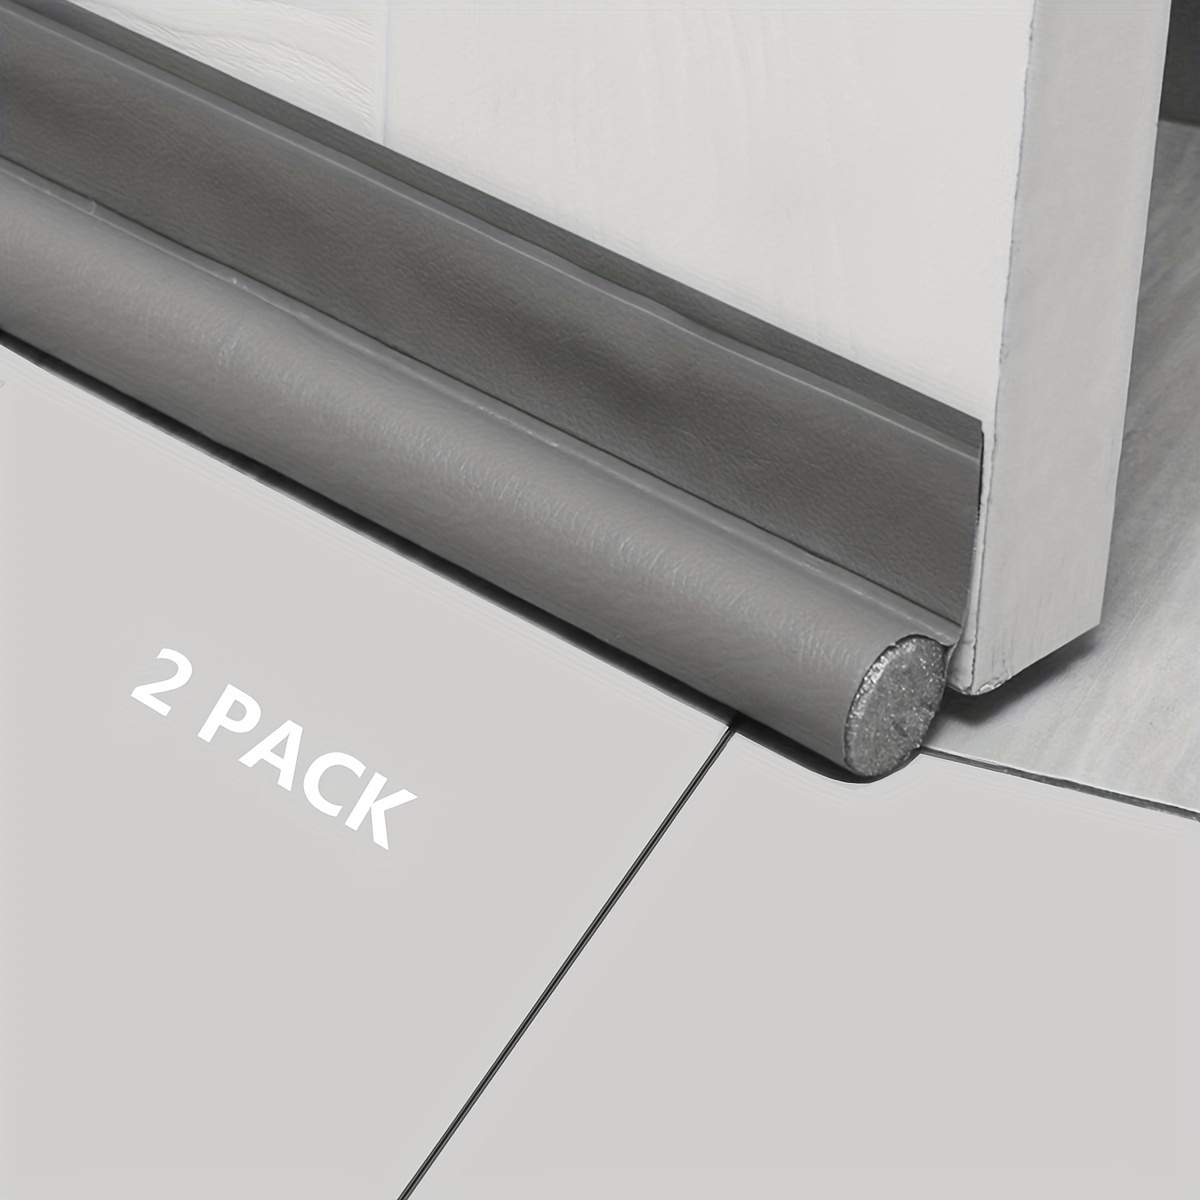 Bas de porte anti-courant d'air & étanchéité porte (1 x blanc)- NOUVEAU bas  de porte isolant (rapide à installer), idéal pour l'isolation contre le  froid, le bruit & l'humidité 